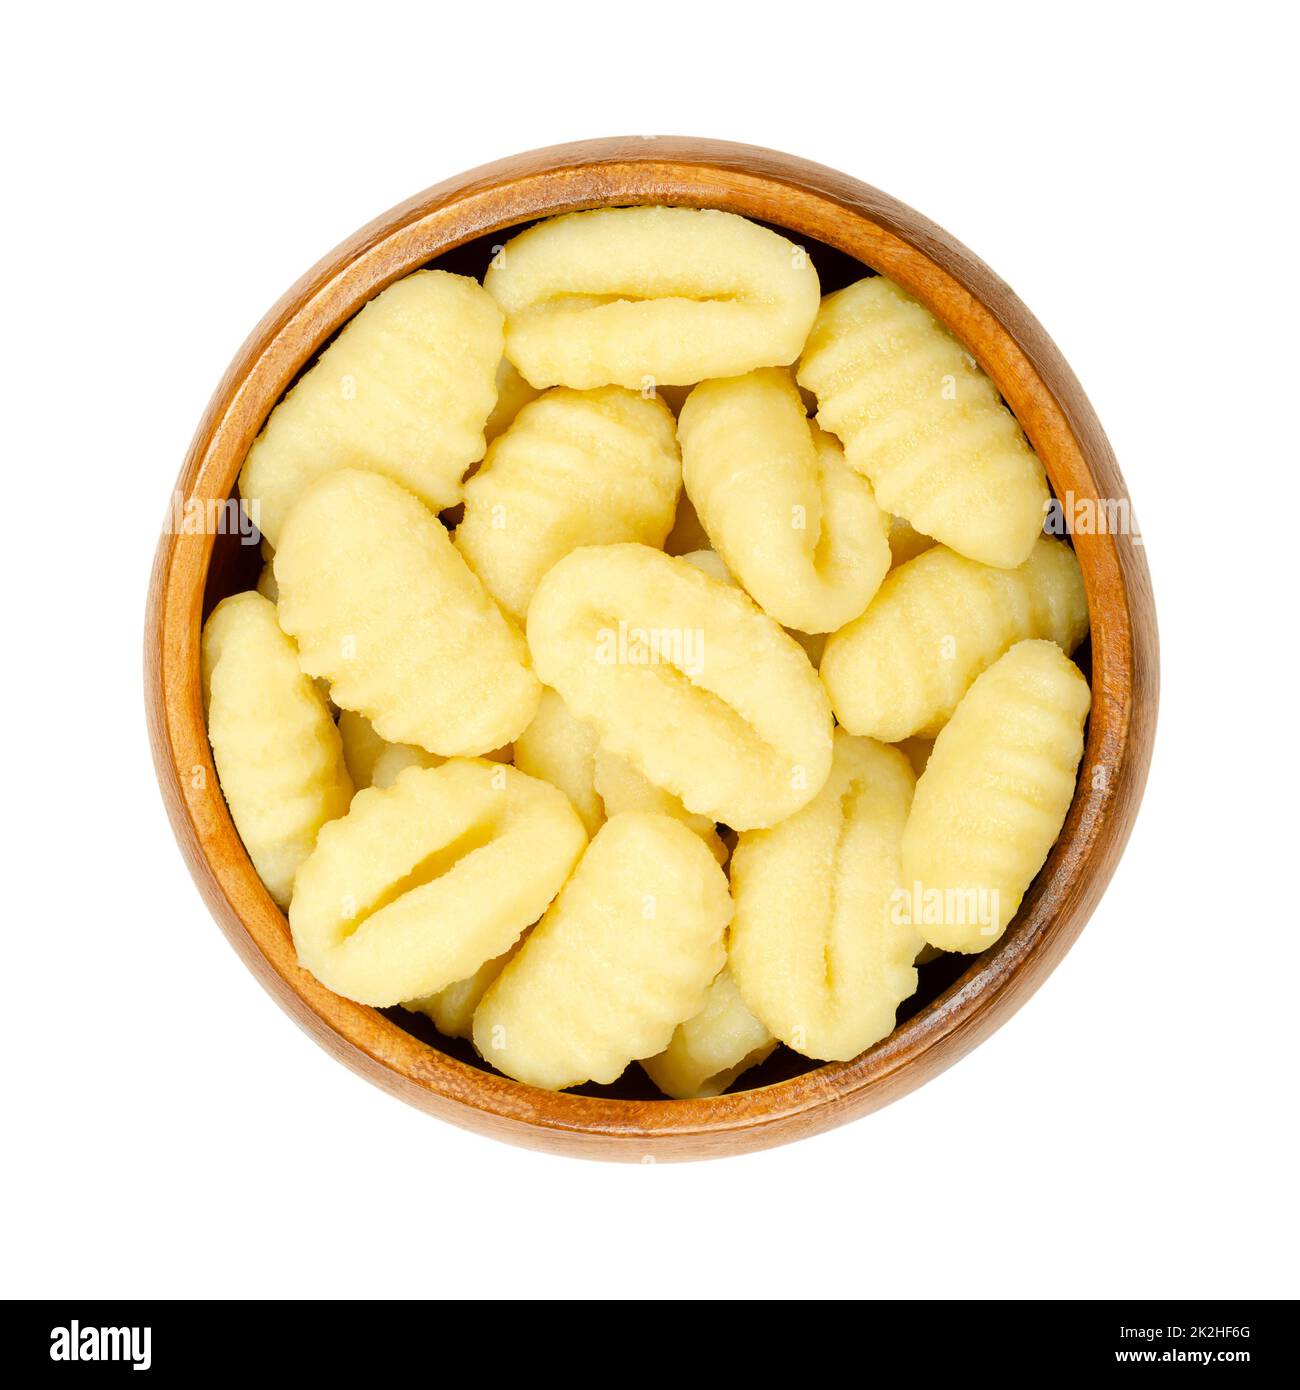 Gnocchi cru, boulettes italiennes à base de pommes de terre et de farine, dans un bol en bois Banque D'Images